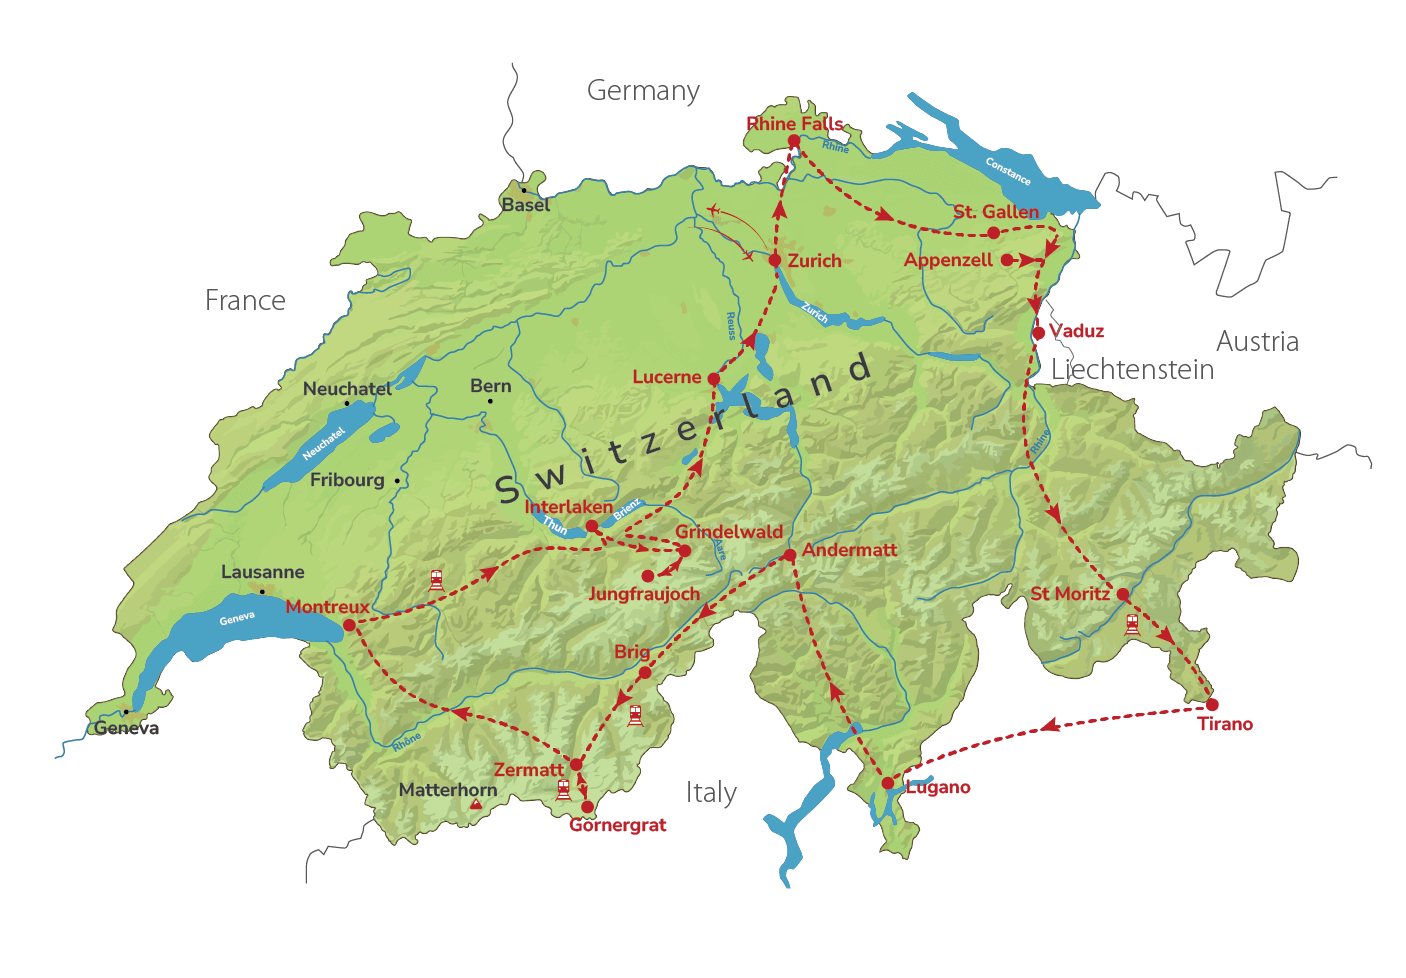 Grand Tour of Switzerland